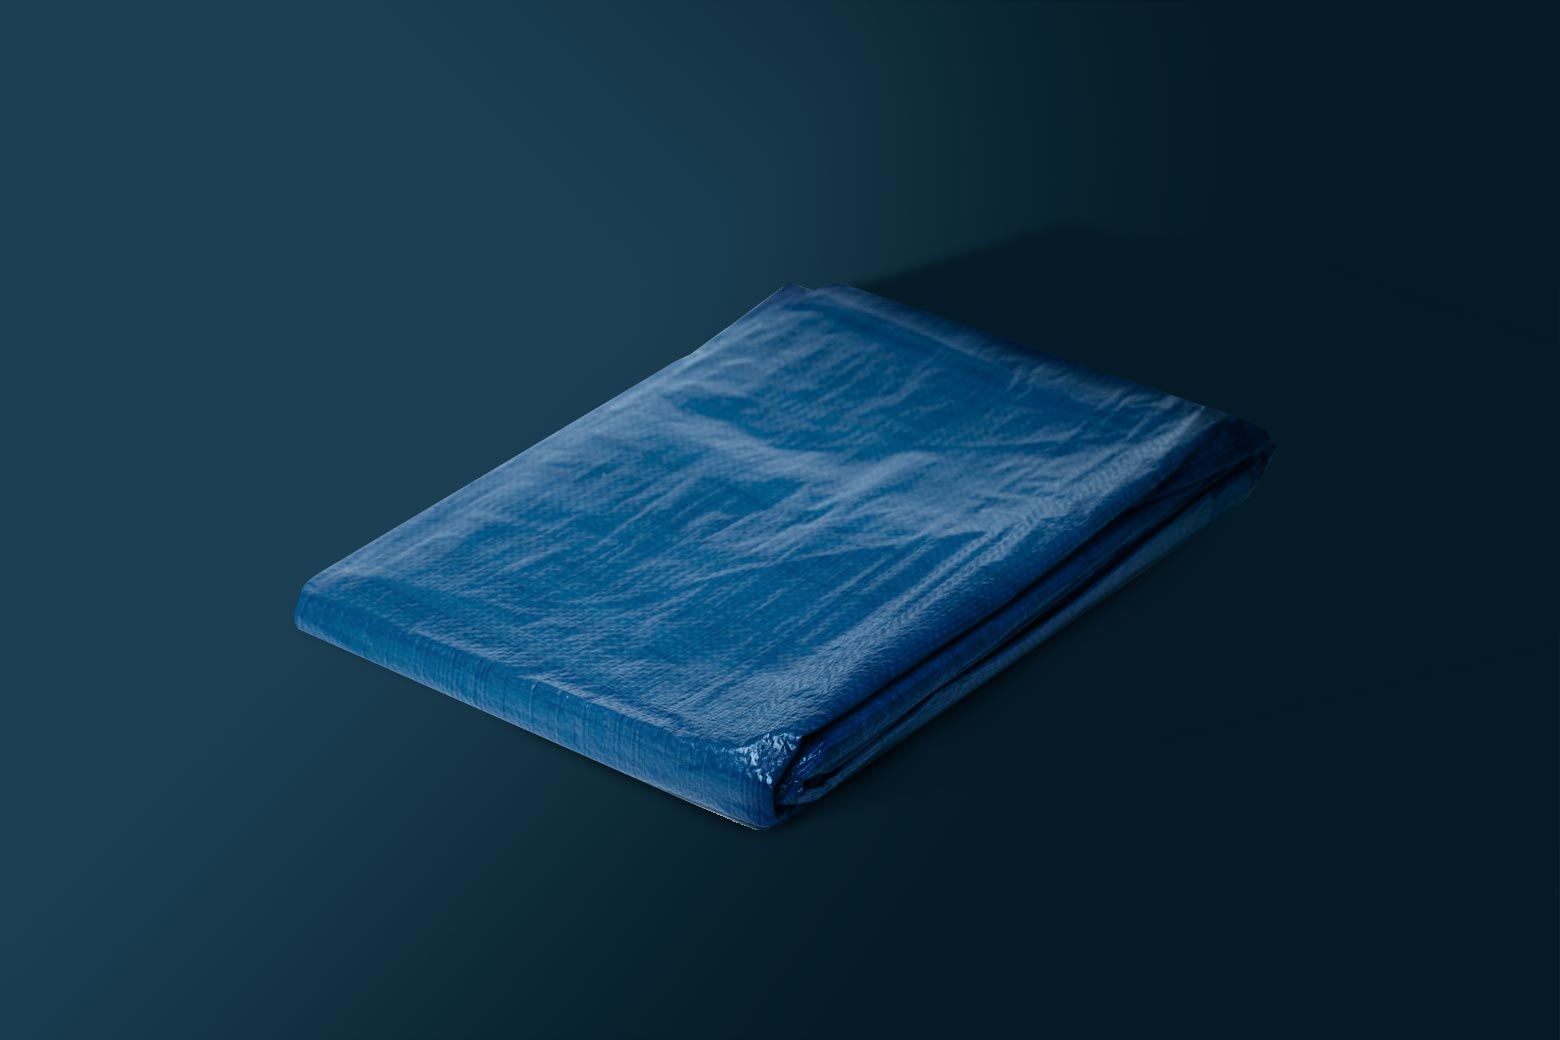 A folded-up blue tarp.